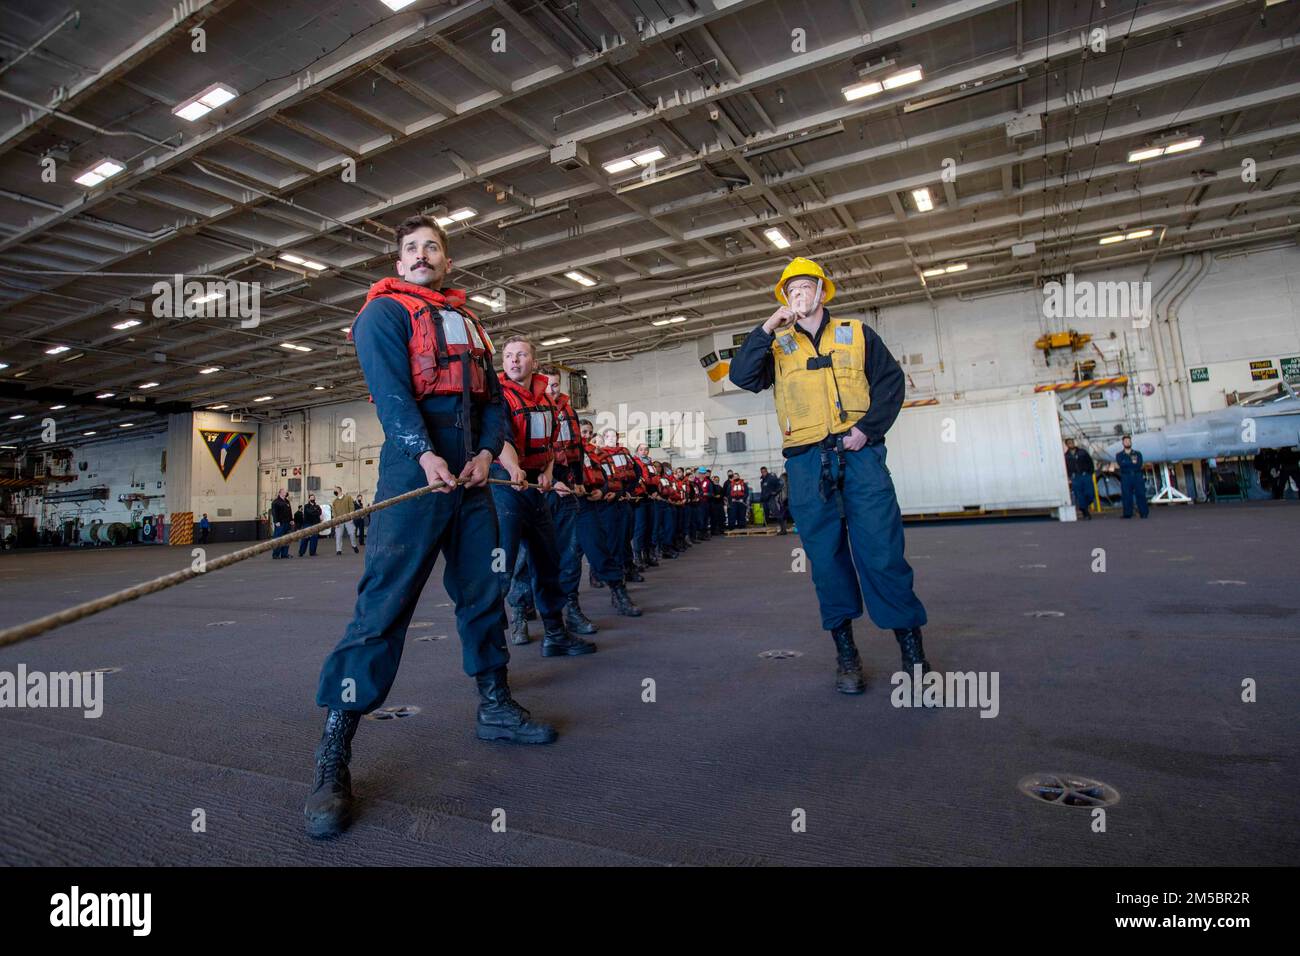 220224-N-KU796-1121 PAZIFISCHER OZEAN (24. Februar 2022) Seeleute legen während einer Wiederauffüllung auf See in der Hangarbucht an Bord des Flugzeugträgers USS Nimitz (CVN 68) eine Schlange an. Nimitz führt gerade Routineoperationen durch. Stockfoto